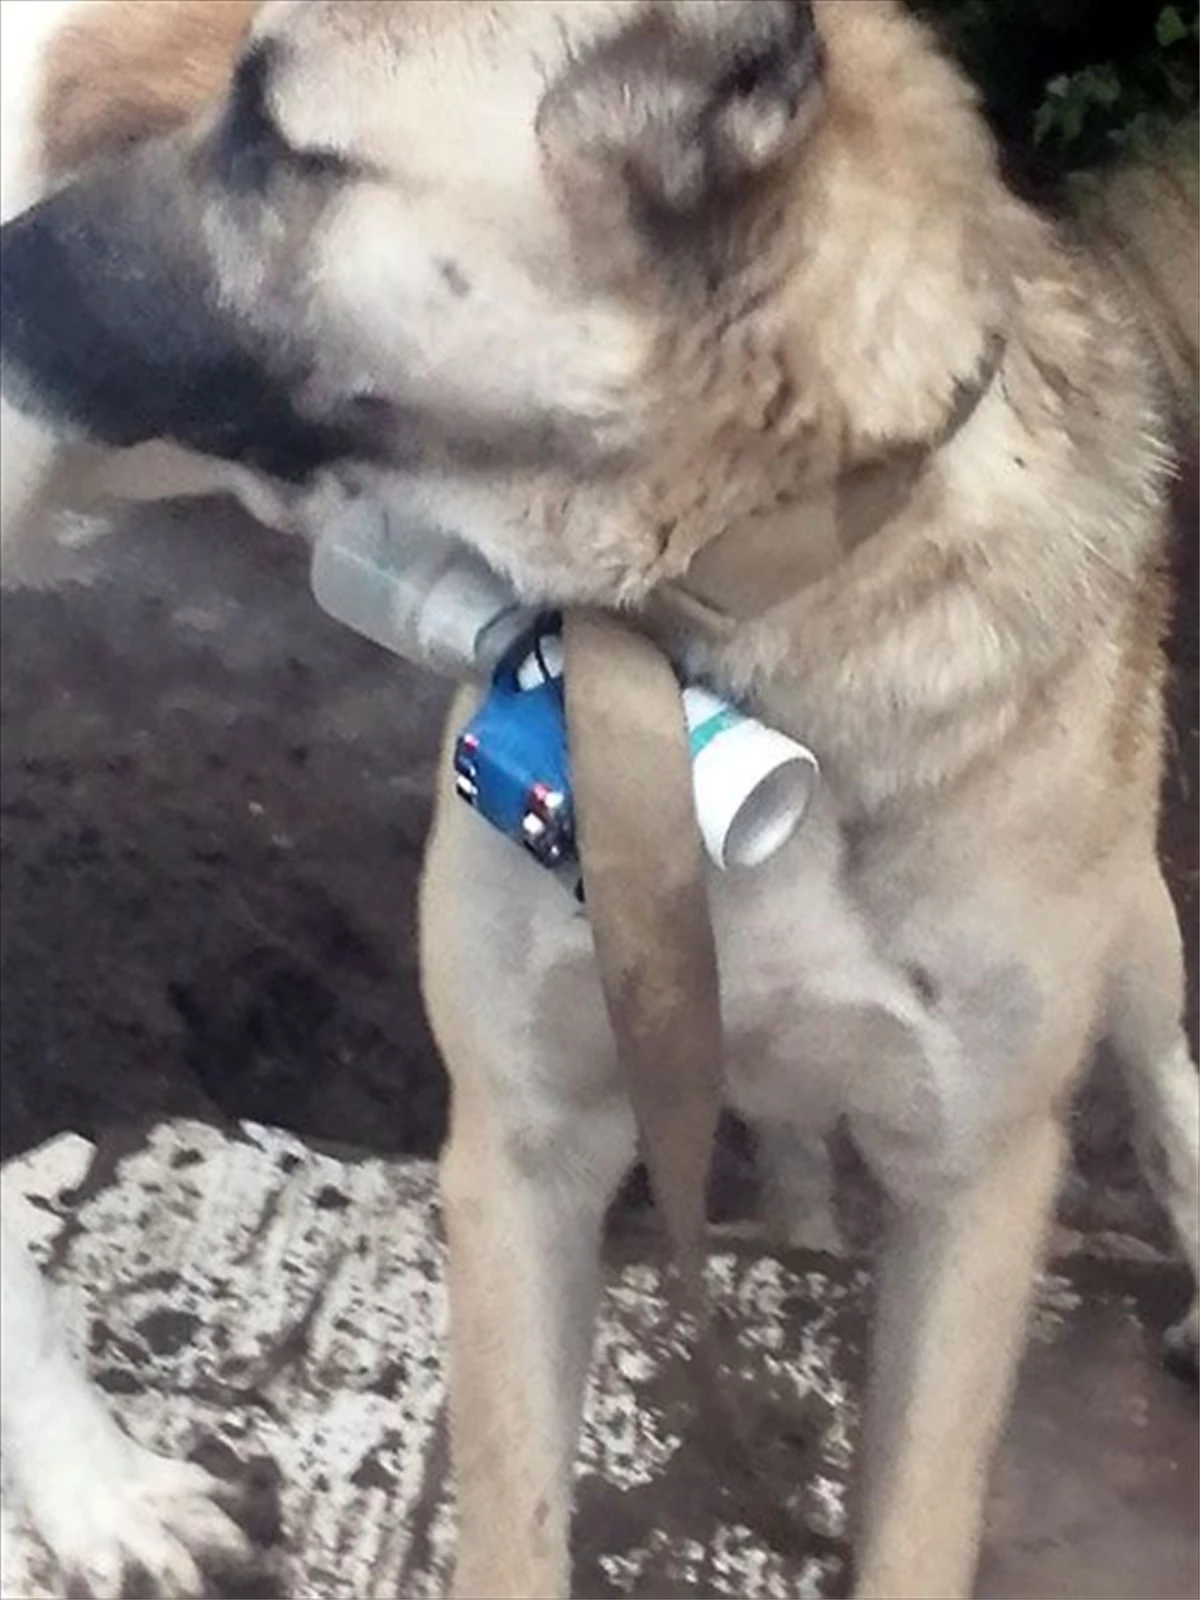 Ermeni askerler, boynuna bomba bağladıkları köpeği Azerbaycan ordusunun mevzilerine gönderdi